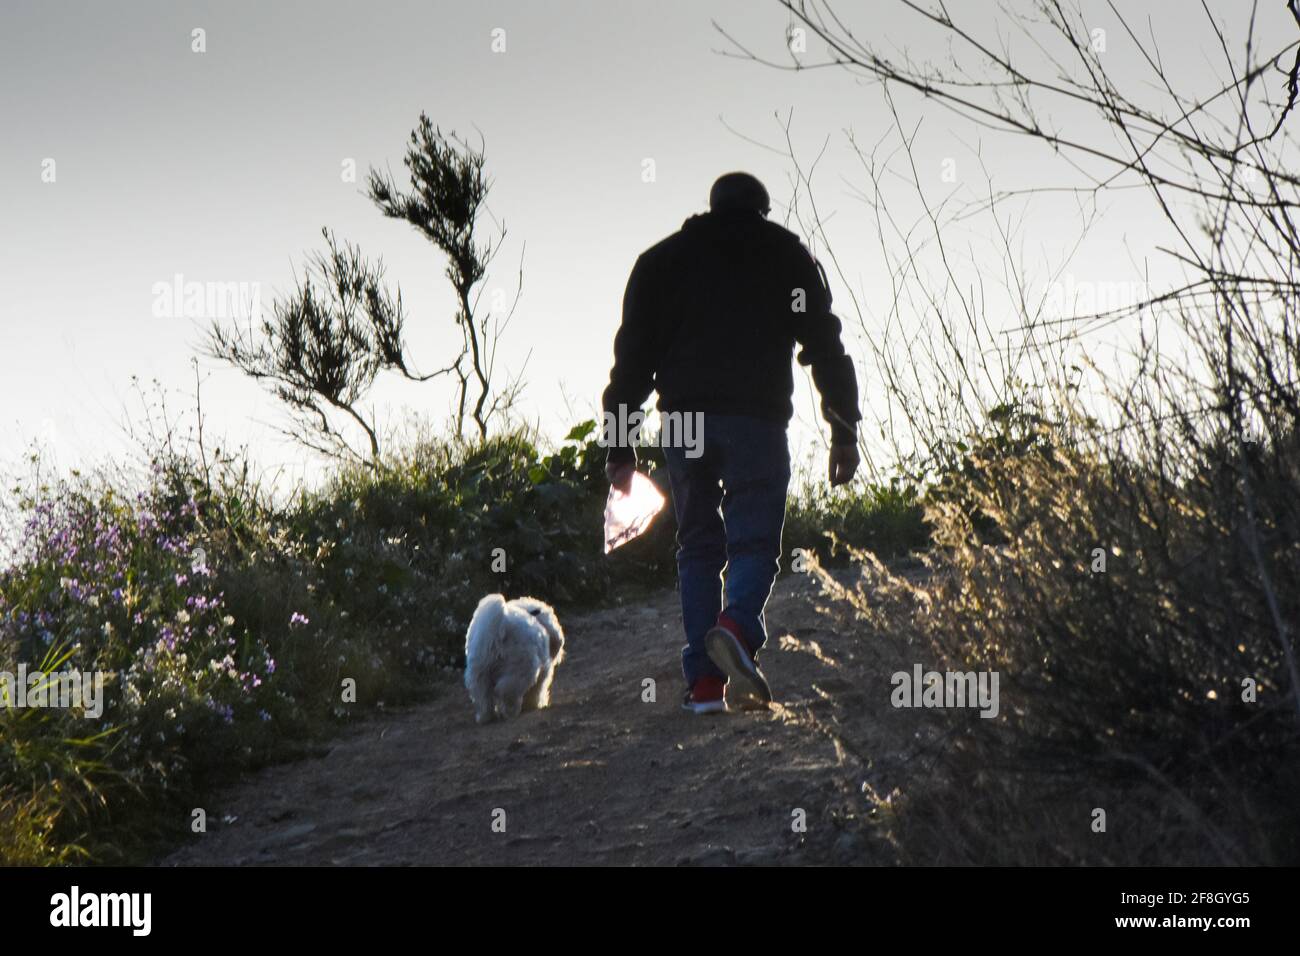 Silhouette d'un homme avec son chien marchant dans un chemin à l'extérieur. Il tient un sac en plastique avec des herbes à l'intérieur. Banque D'Images